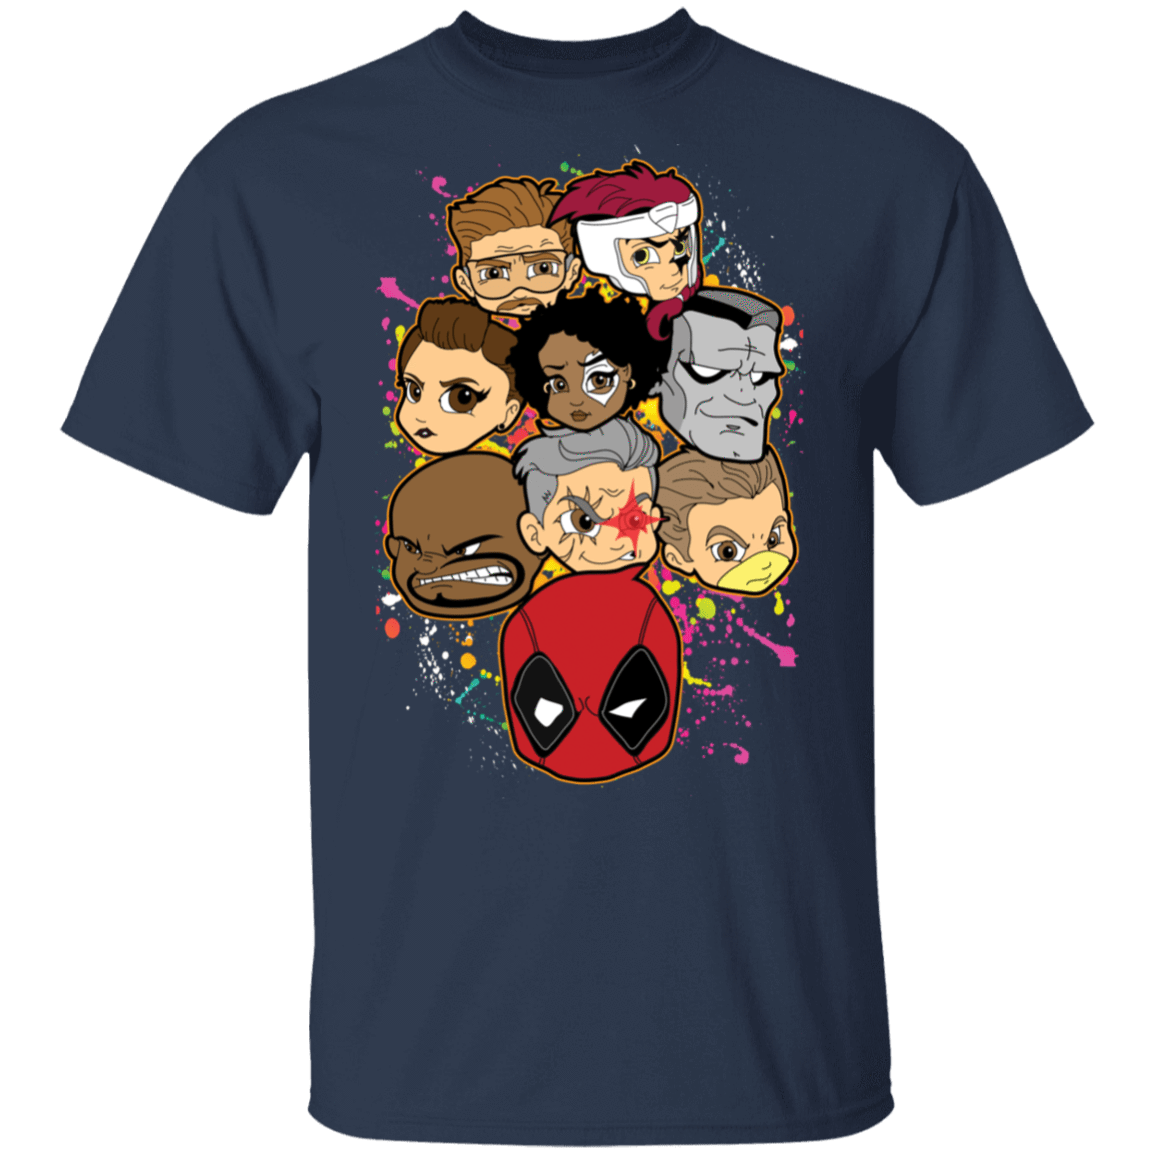 T-Shirts Navy / S Deadpool Heads T-Shirt